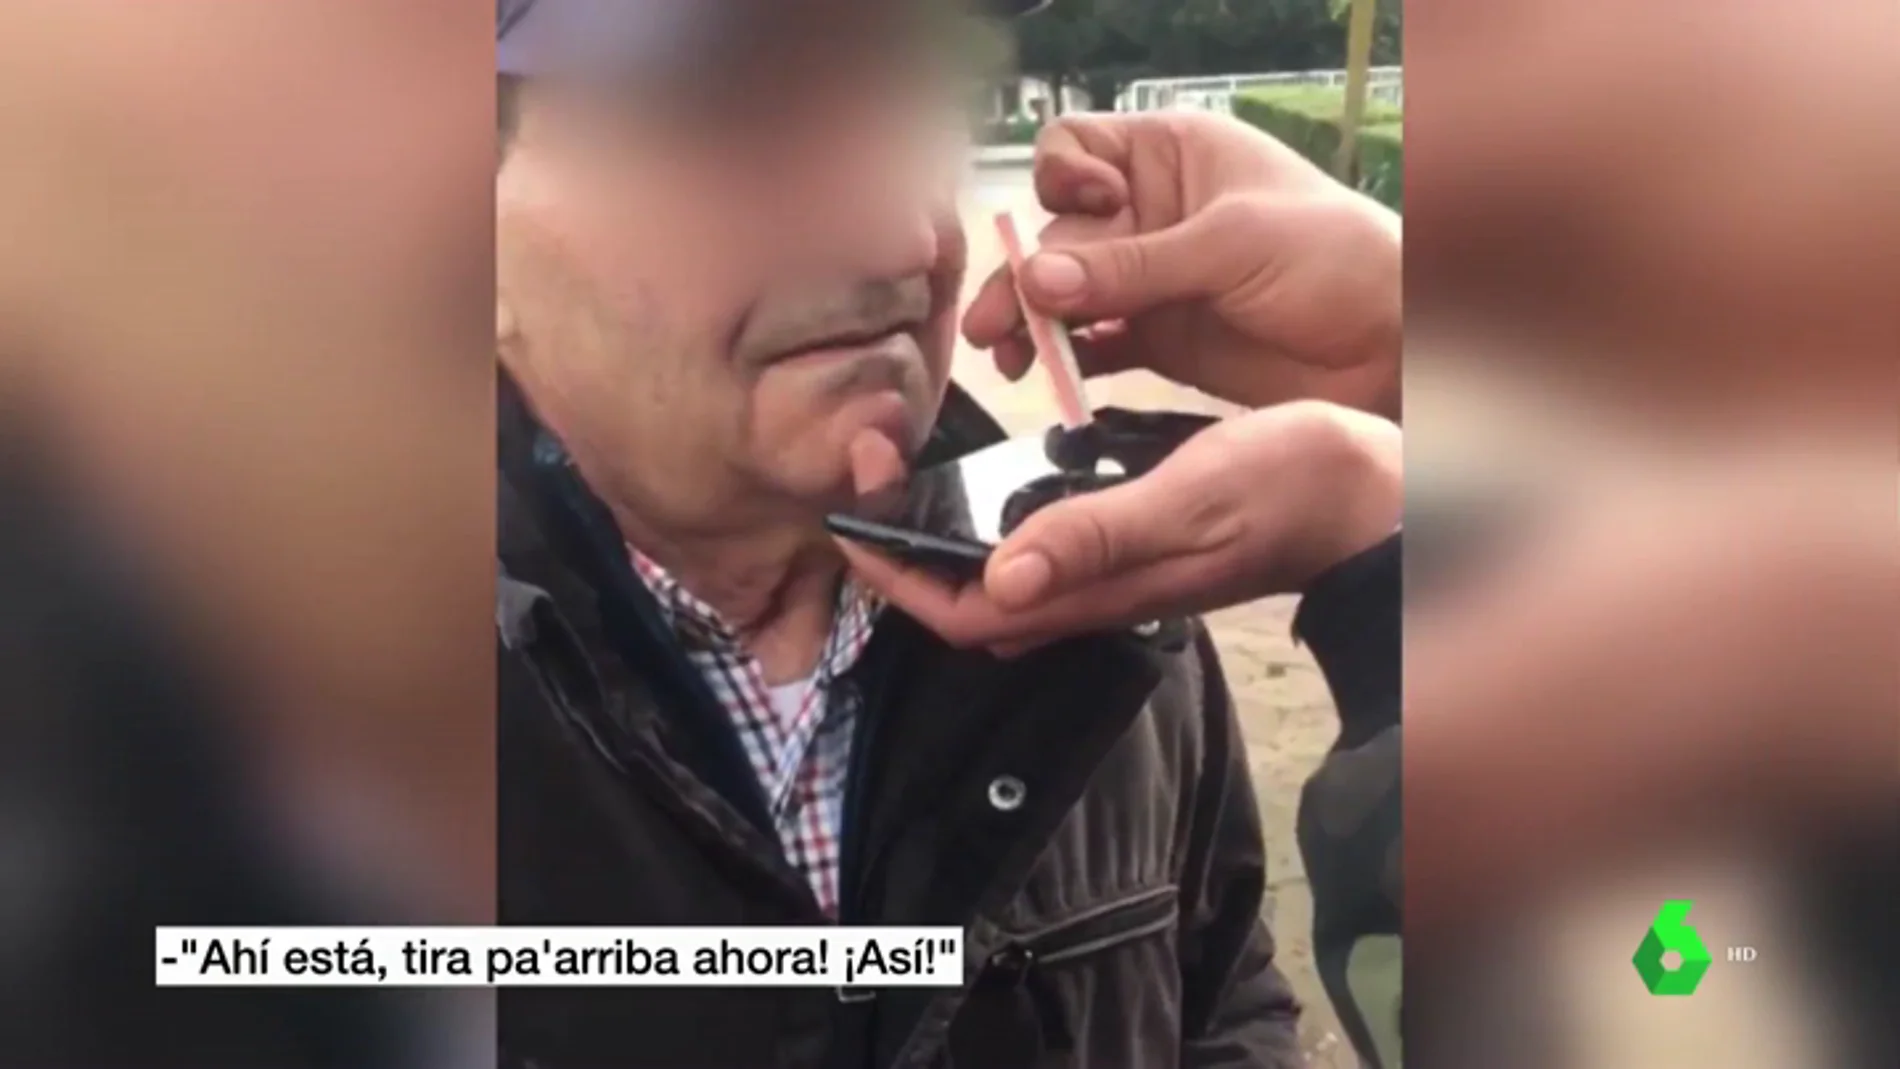 VÍDEO: Cuatro jóvenes obligan a un anciano a esnifar cocaína en Lugo